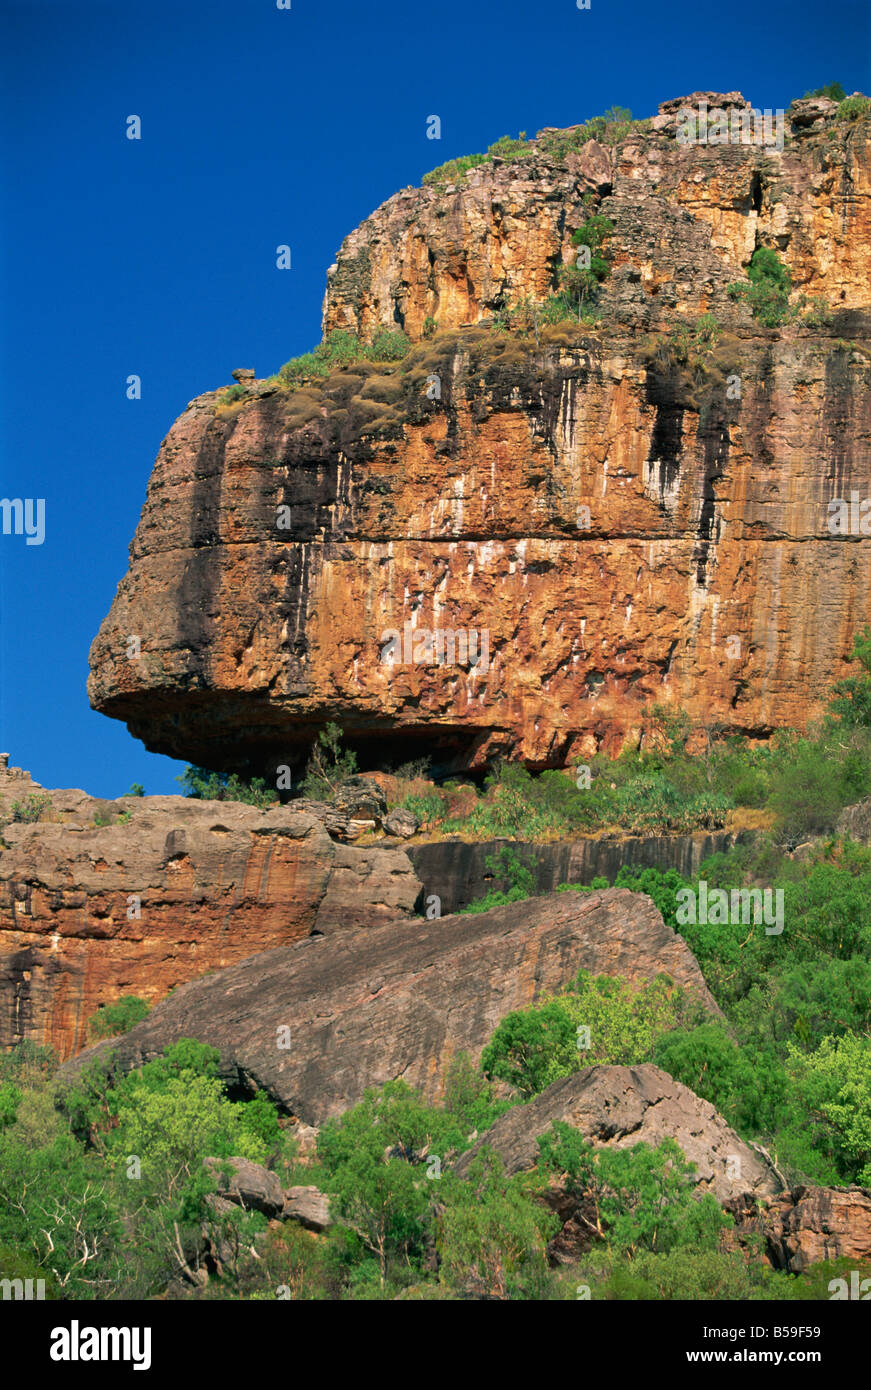 Nourlangie Rock, Heilige Aboriginal Unterschlupf und Rock Art Ort, Kakadu-Nationalpark, Northern Territory, Australien, Pazifik Stockfoto